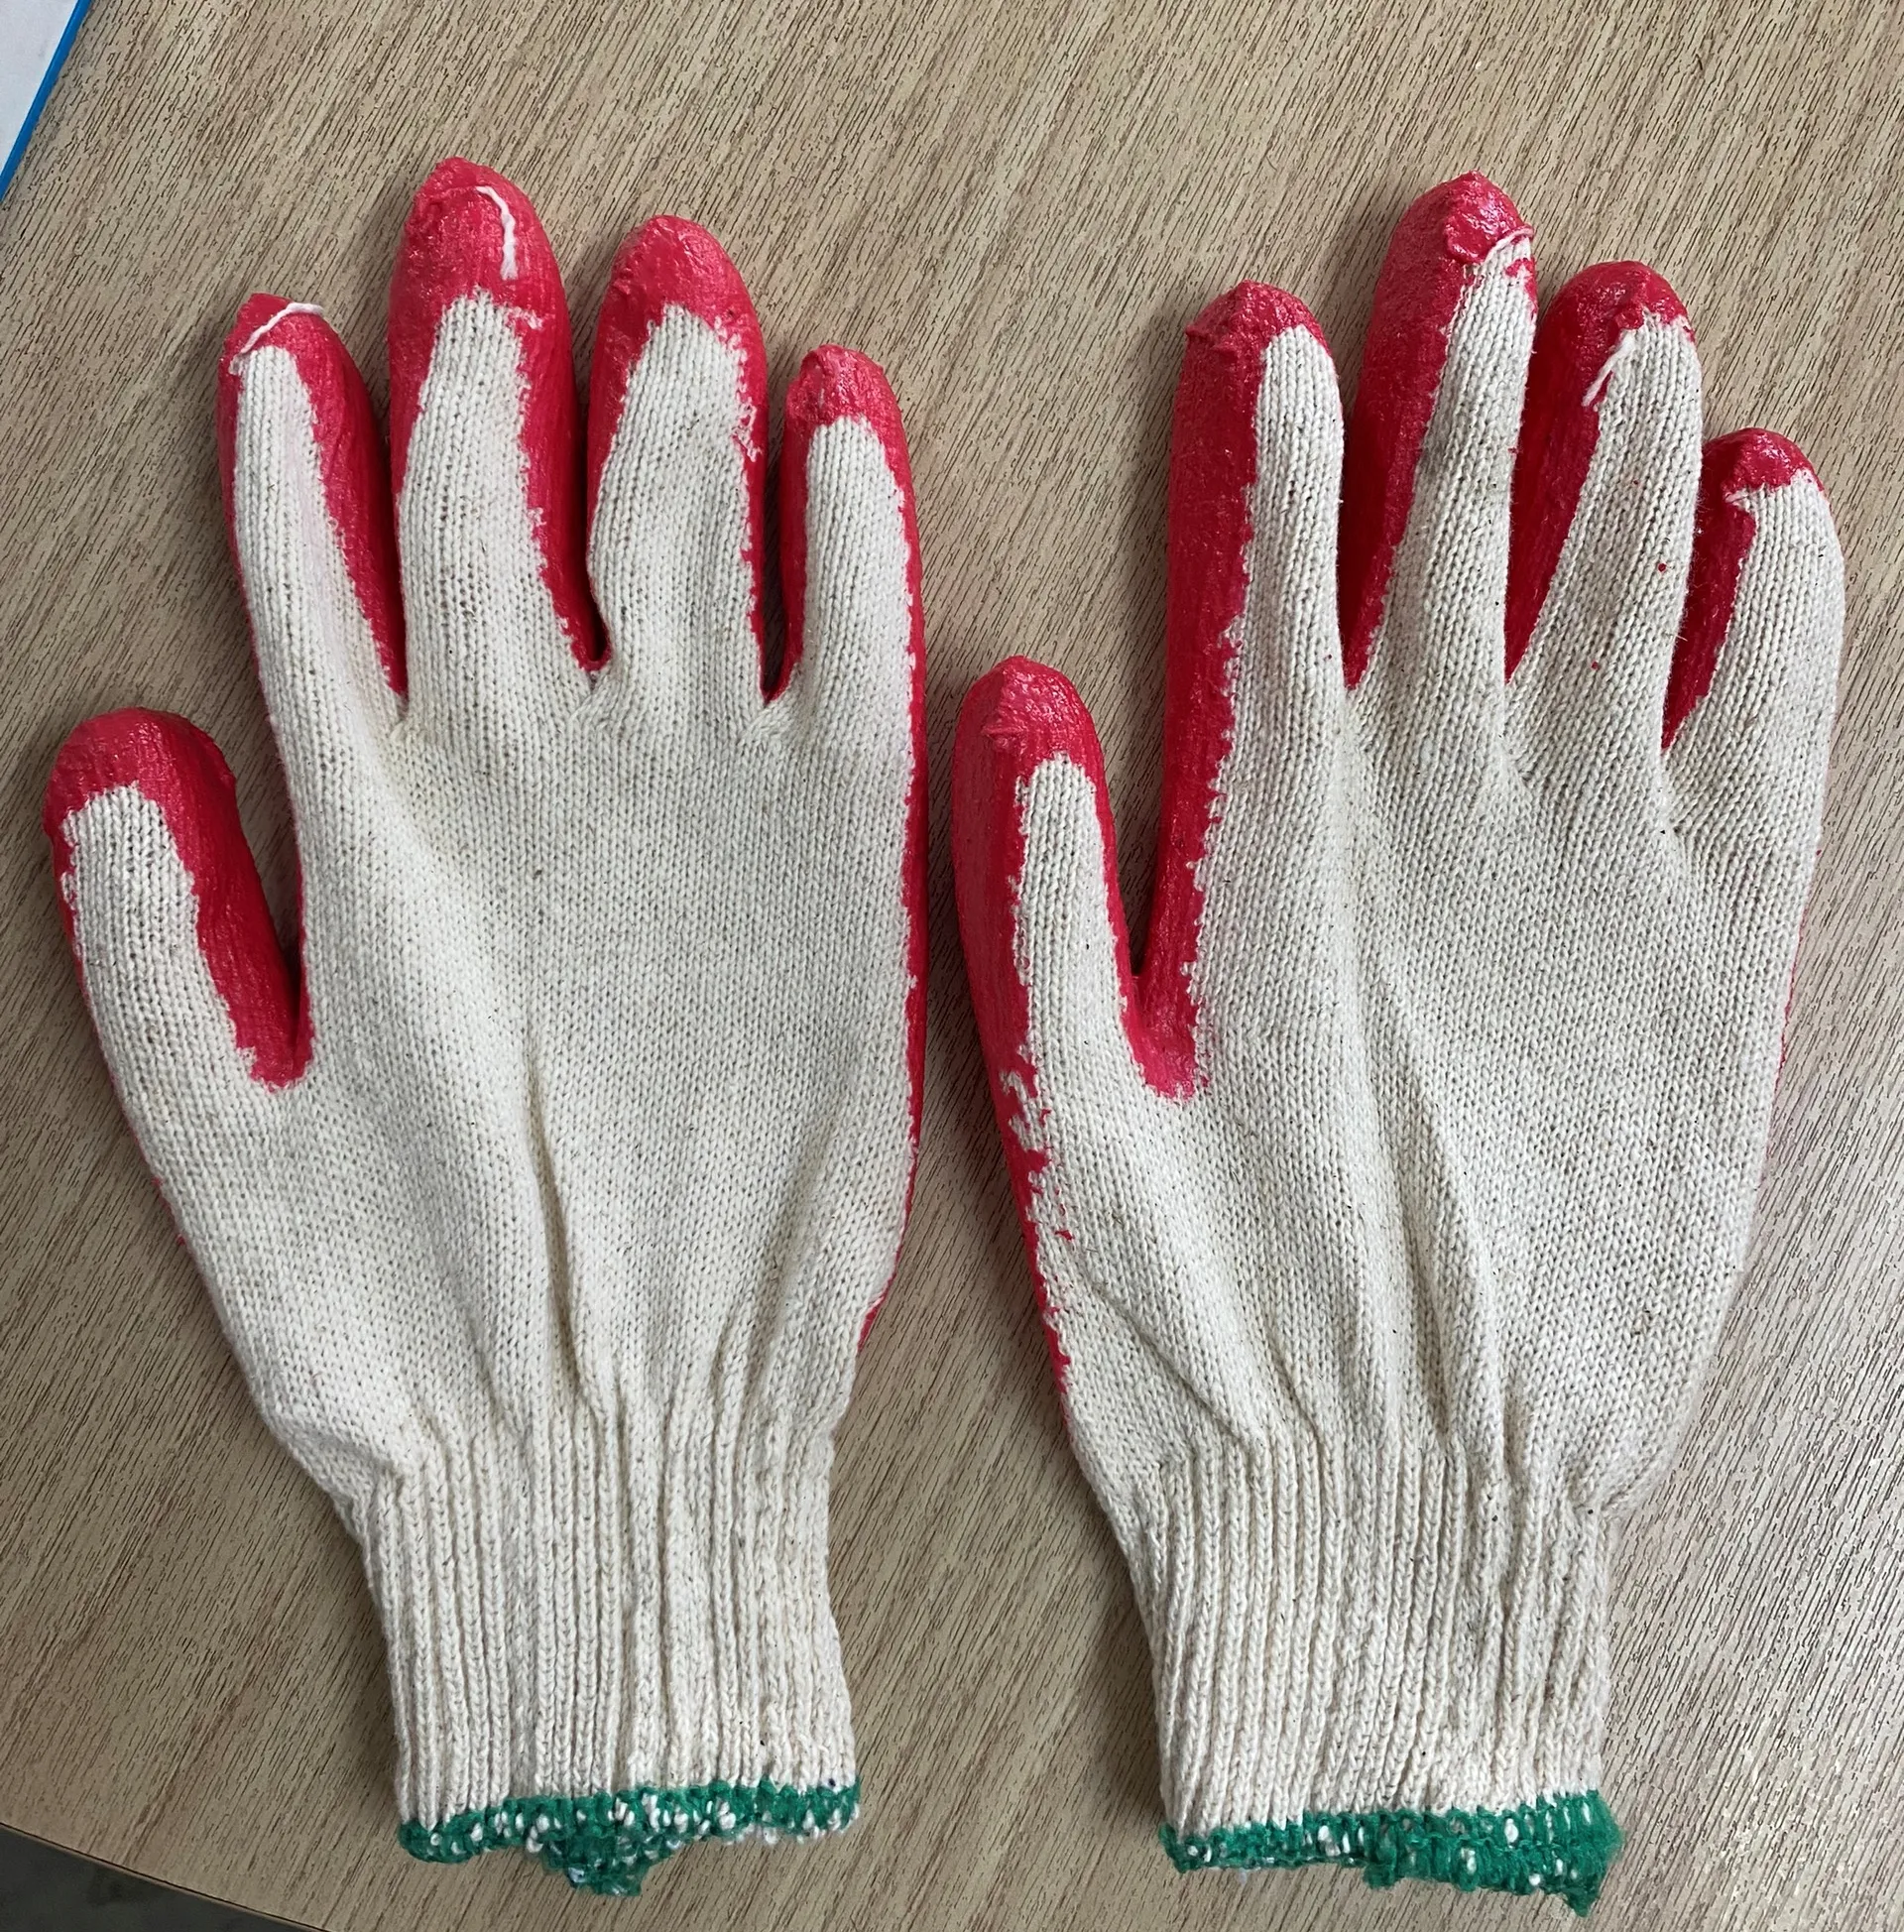 I migliori guanti da lavoro di sicurezza vietnamiti economici-guanti rivestiti in mezzo lattice di vendita caldi-guanti rivestiti con palmo in lattice